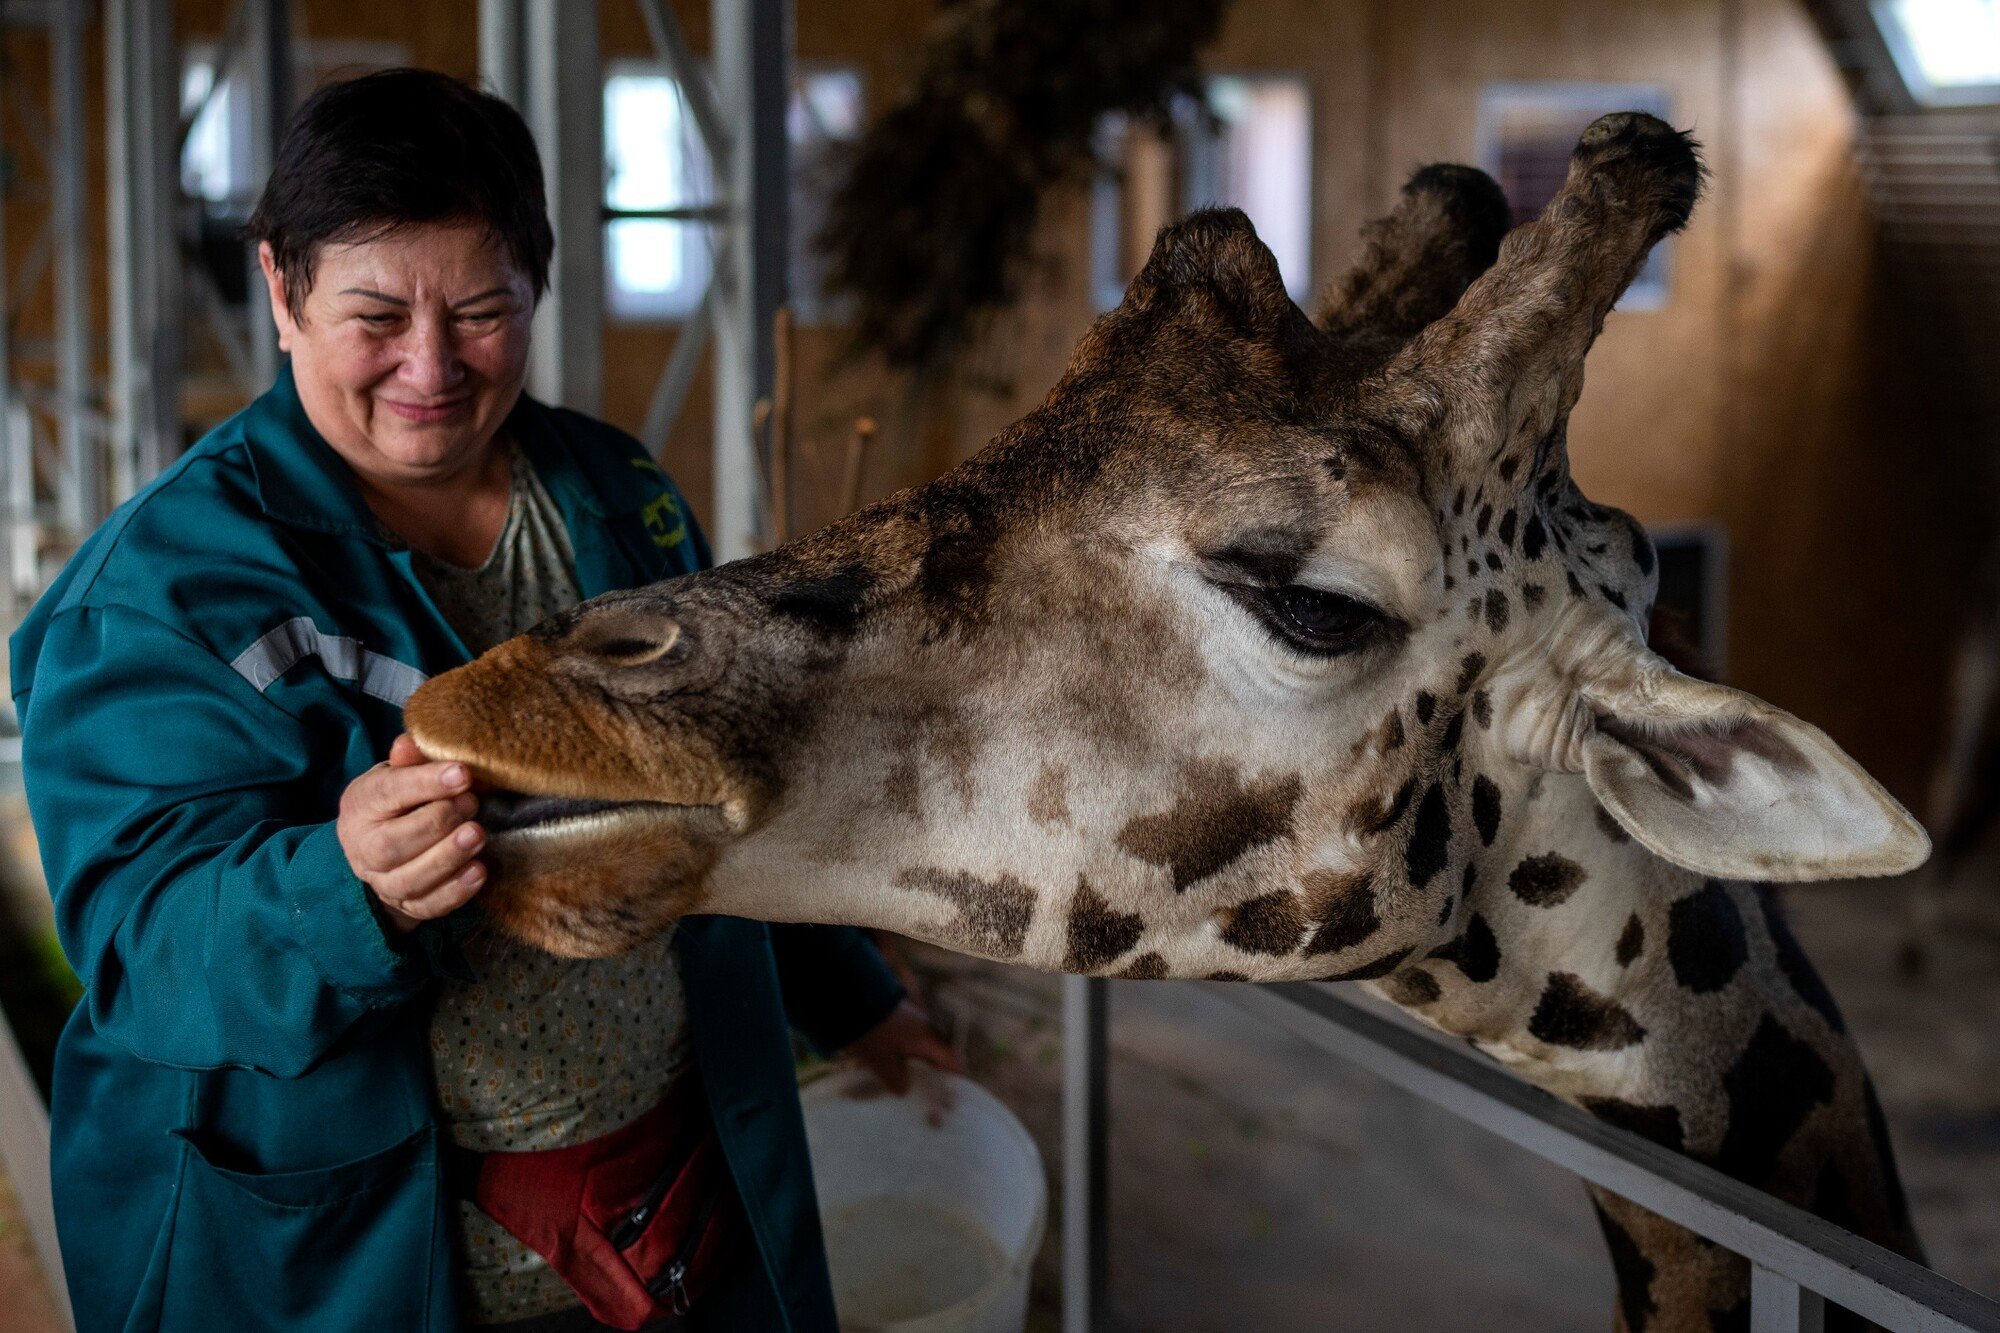 Opatrovateľka Svitlana Šmaldiová kŕmi žirafu v zoologickej záhrade v meste Mykolajiv na juhu Ukrajiny. „Každý deň chodím pracovať do zoologickej záhrady napriek sirénam a výbuchom. Je to desivé, ale kto sa postará o zvieratá?“ hovorí. (26. október 2022)